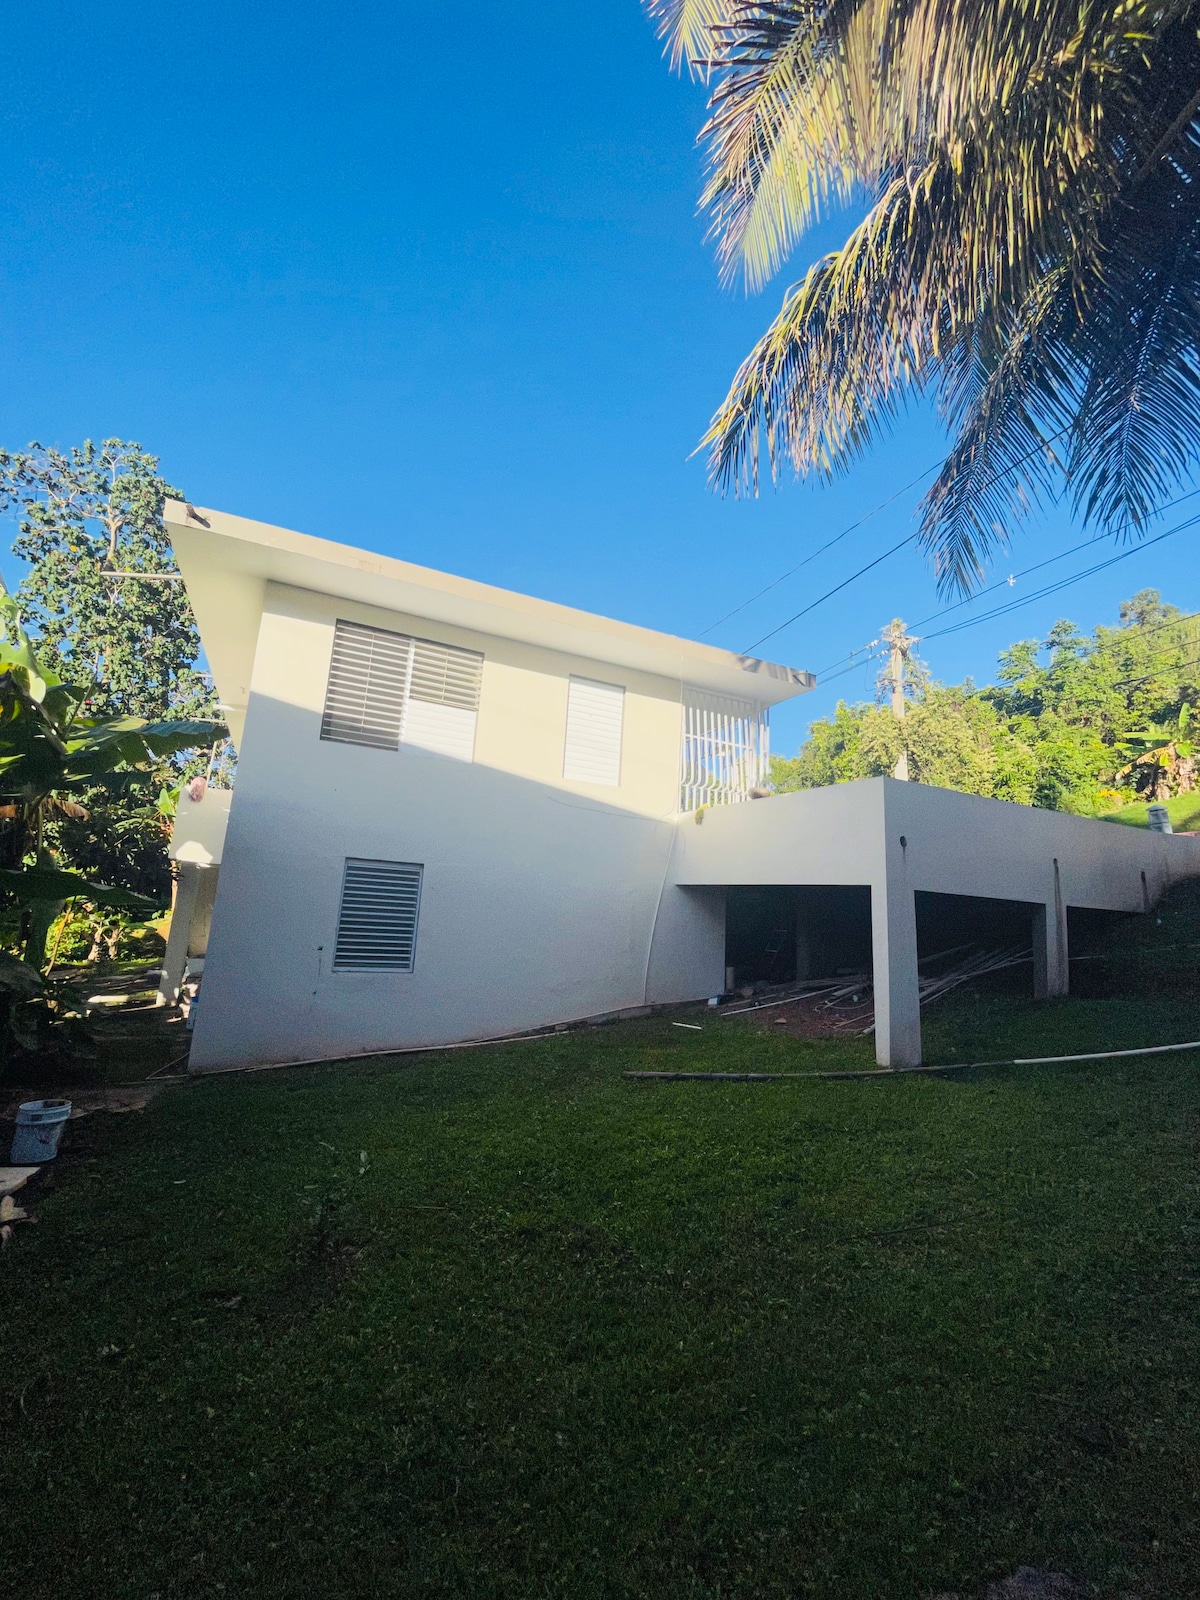 Casa de Palo Hincado, Barranquitas, Puerto Rico